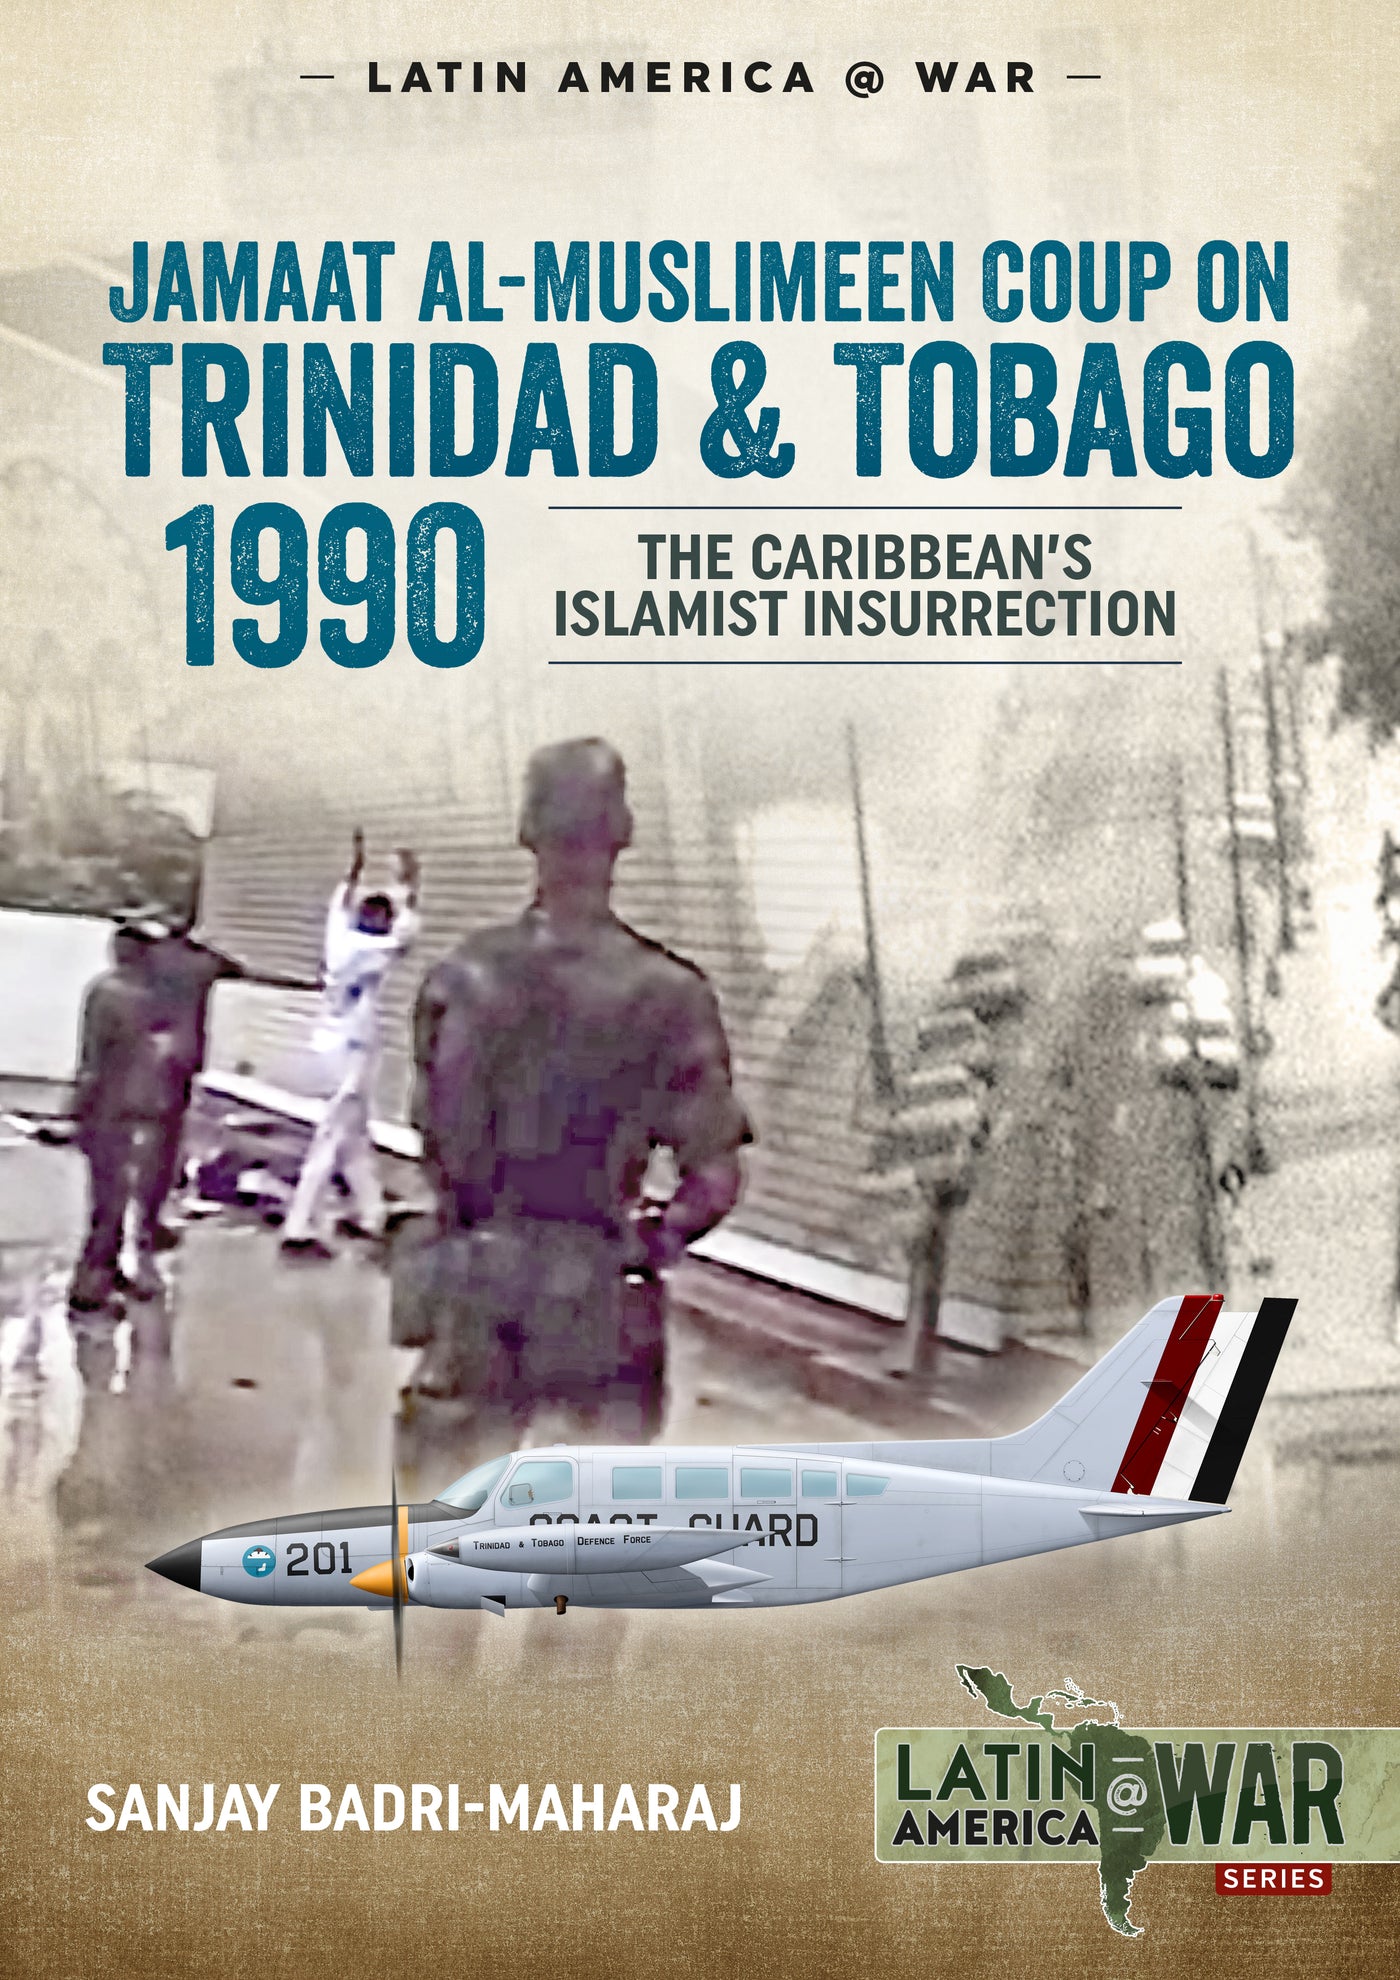 Trinidad 1990